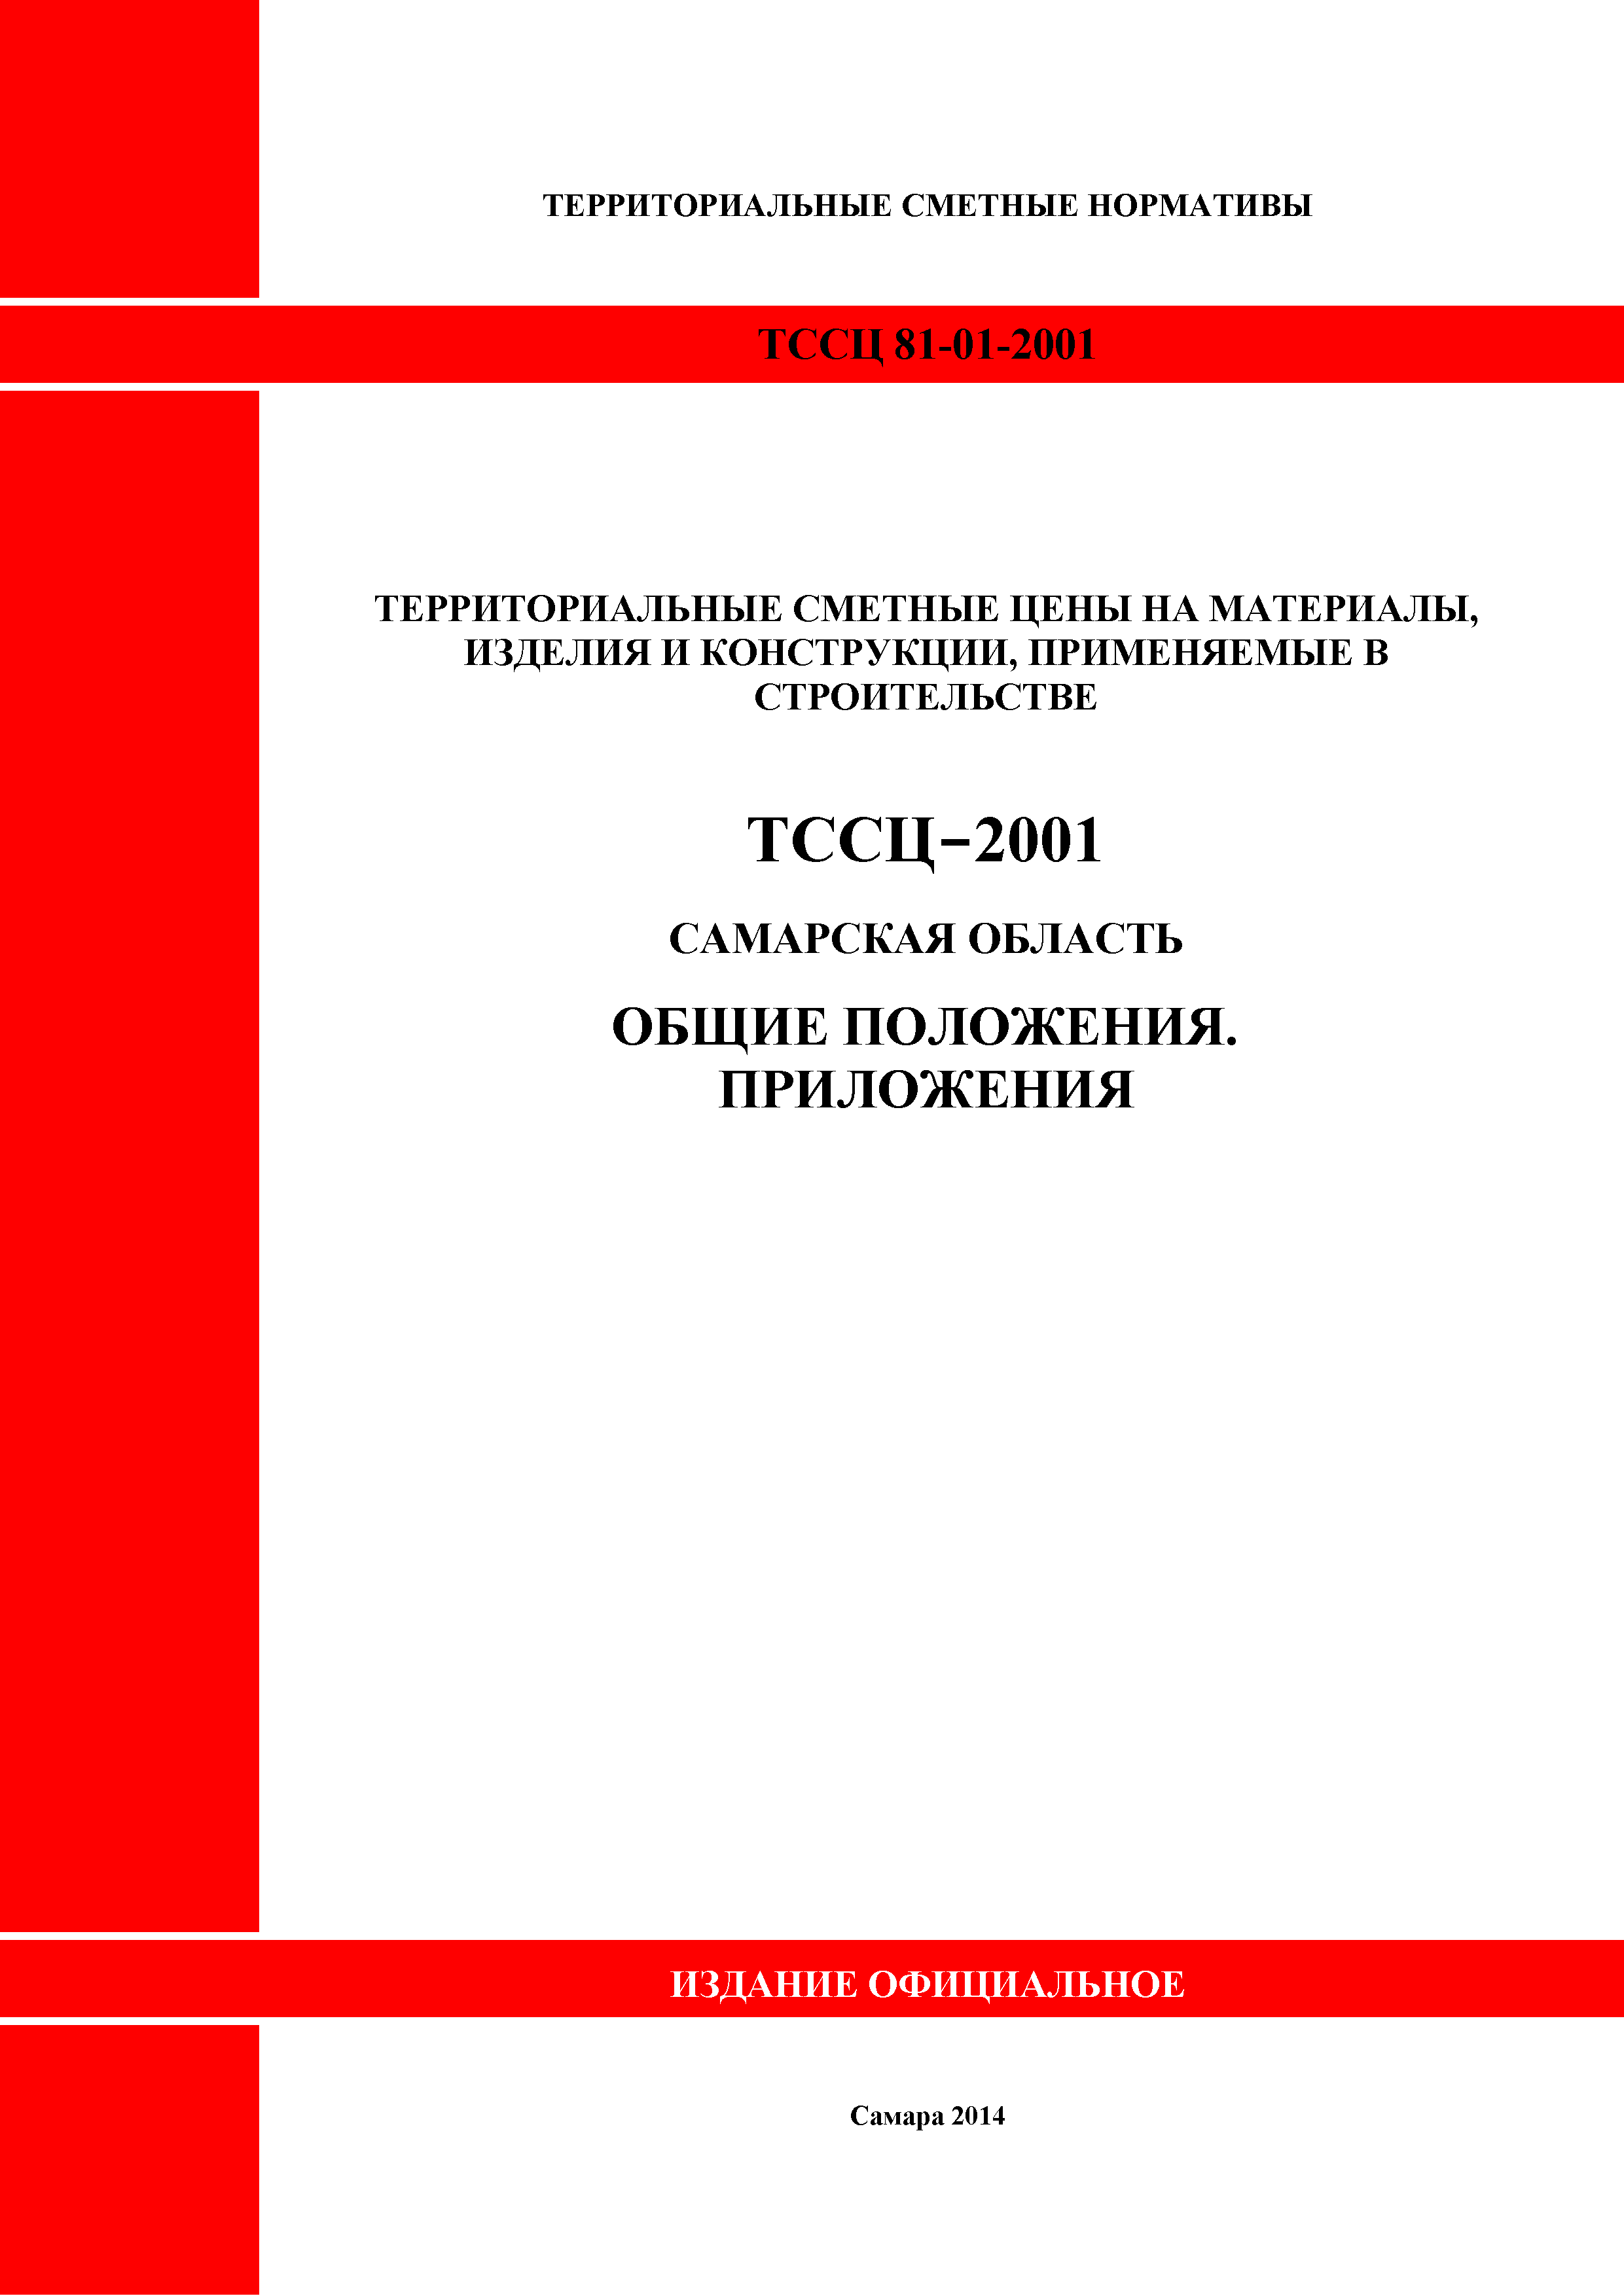 ТССЦ Самарская область 81-01-2001